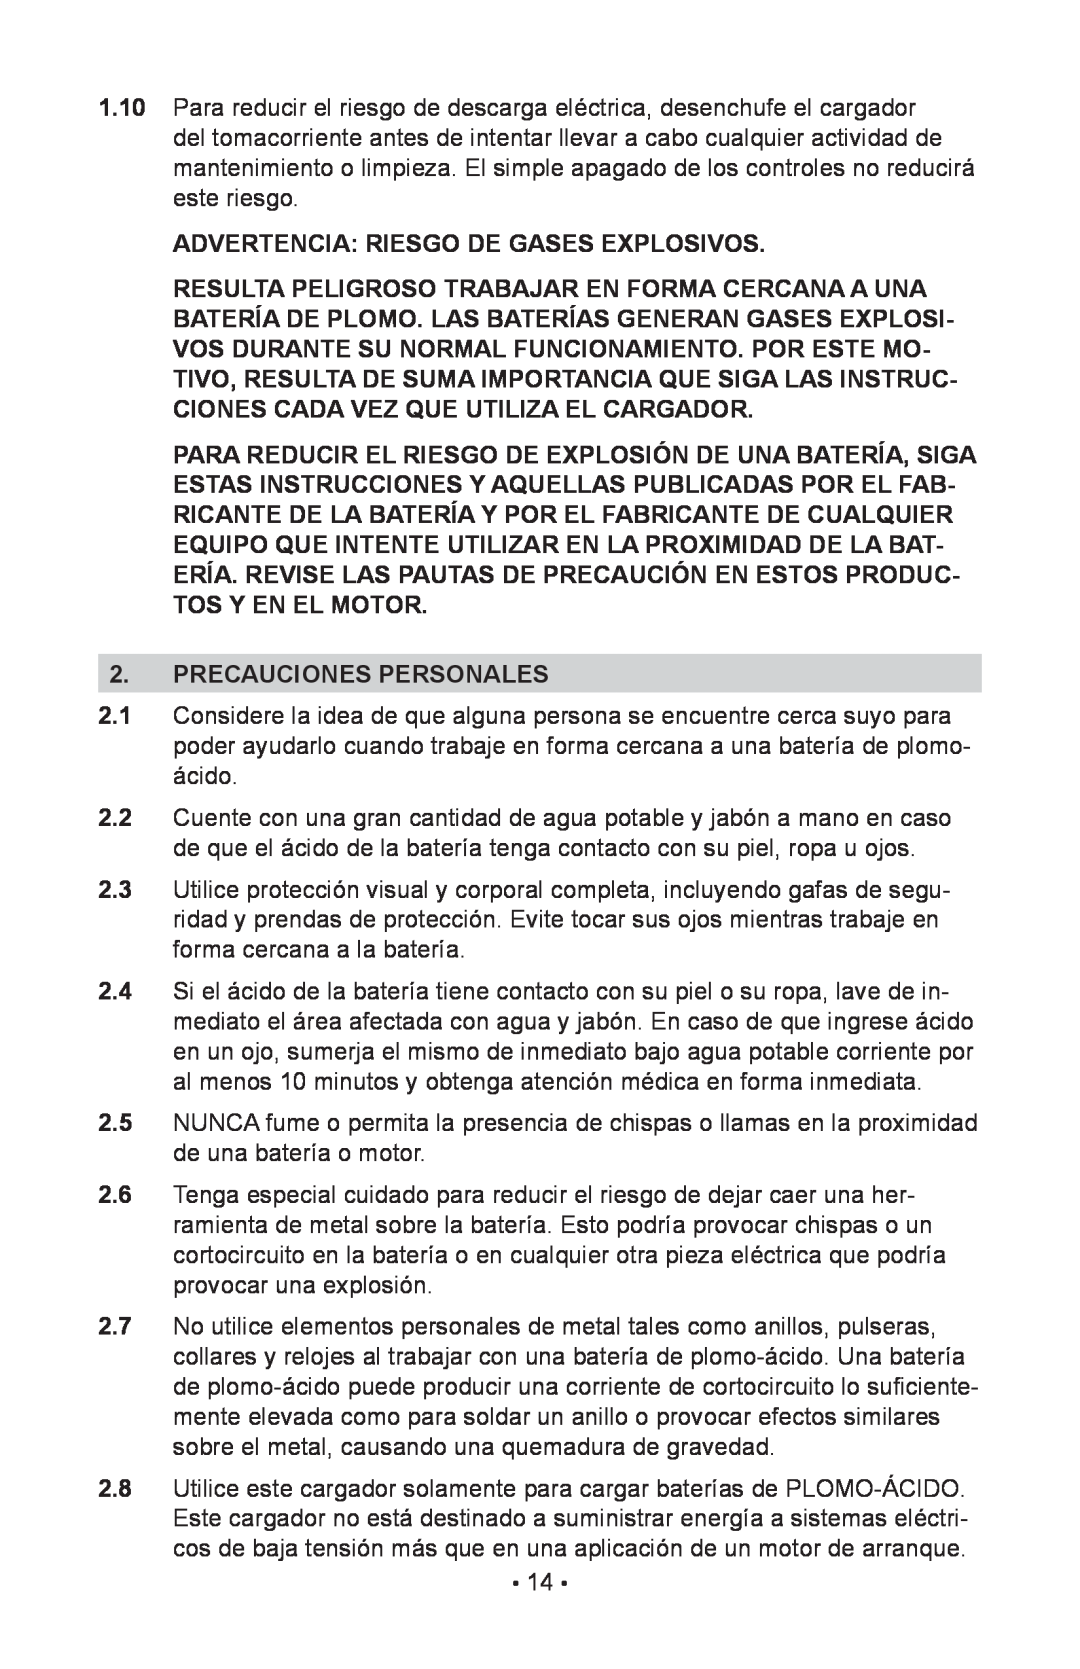 Schumacher NIN-812A, 94085894, 00-99-000943 owner manual Advertencia Riesgo De Gases Explosivos, Precauciones Personales 